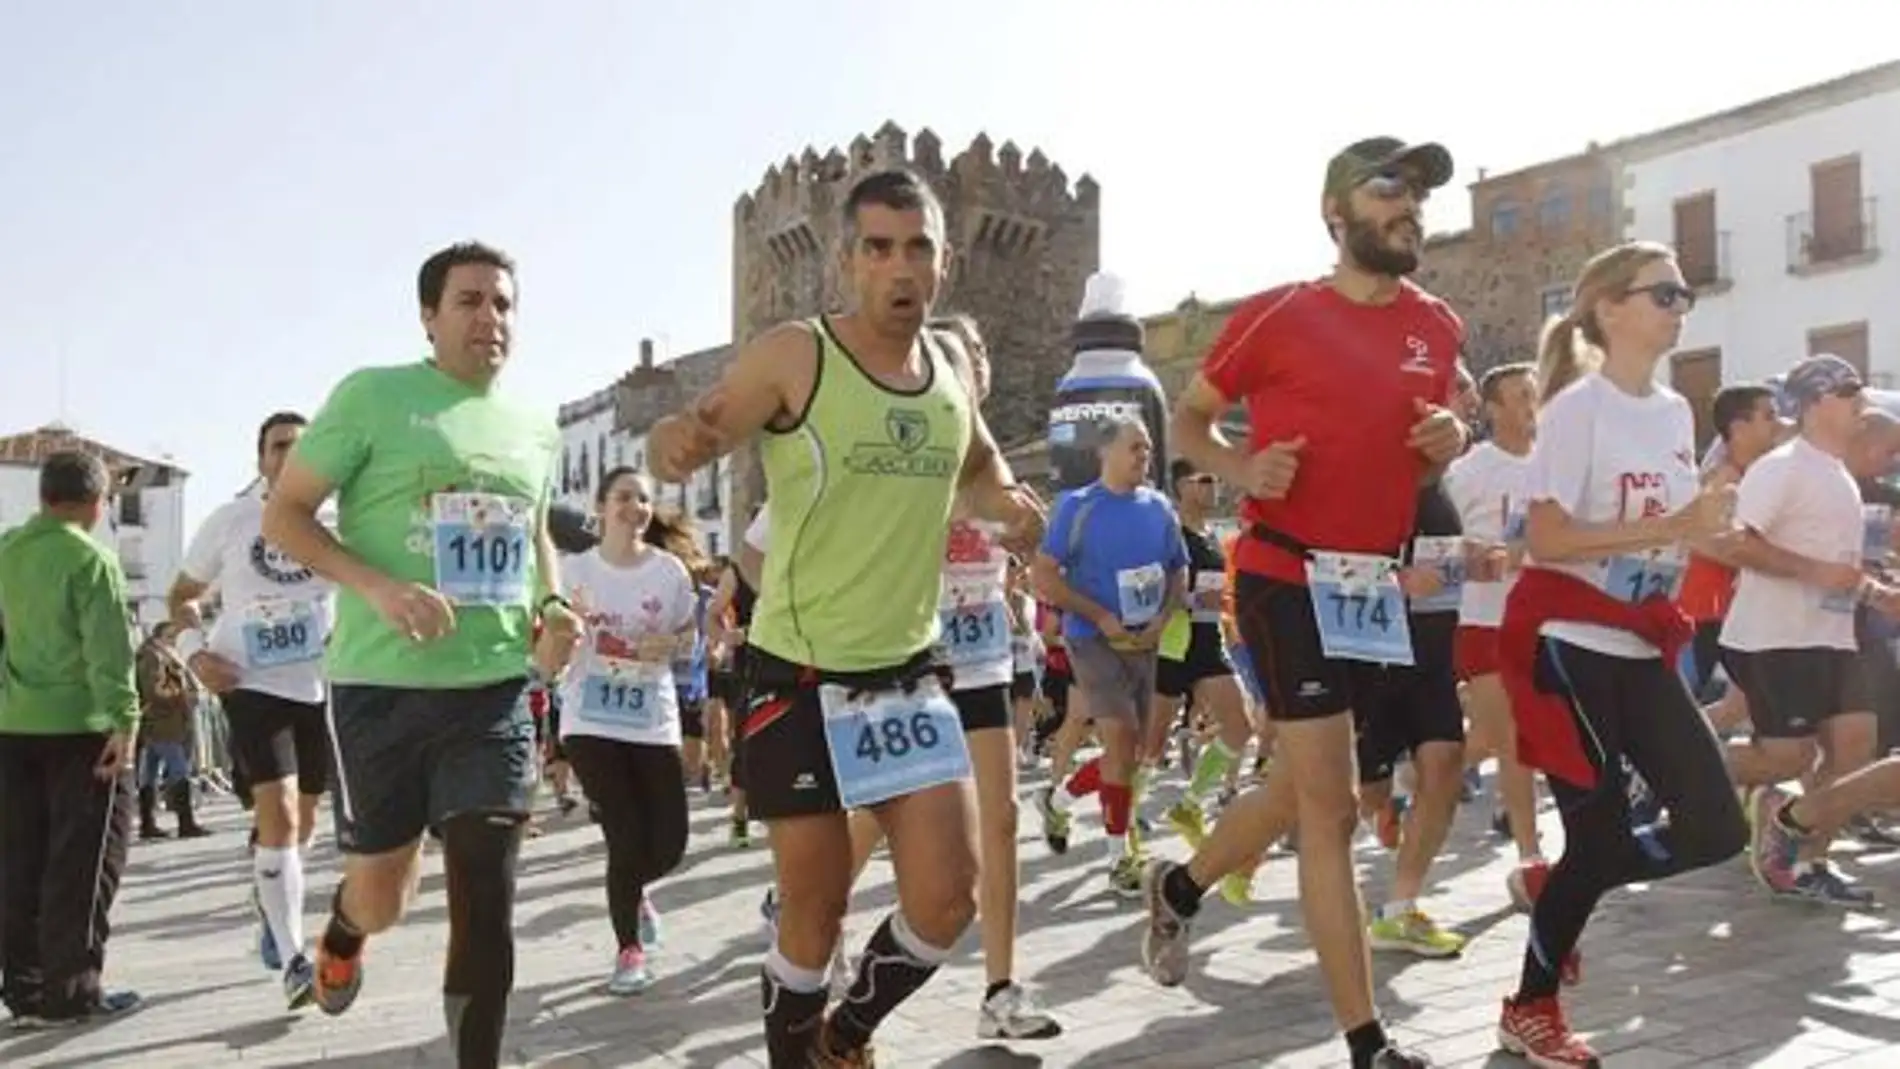 La Media Maratón ‘Cáceres Patrimonio de la Humanidad’ se celebrará el 19 de septiembre